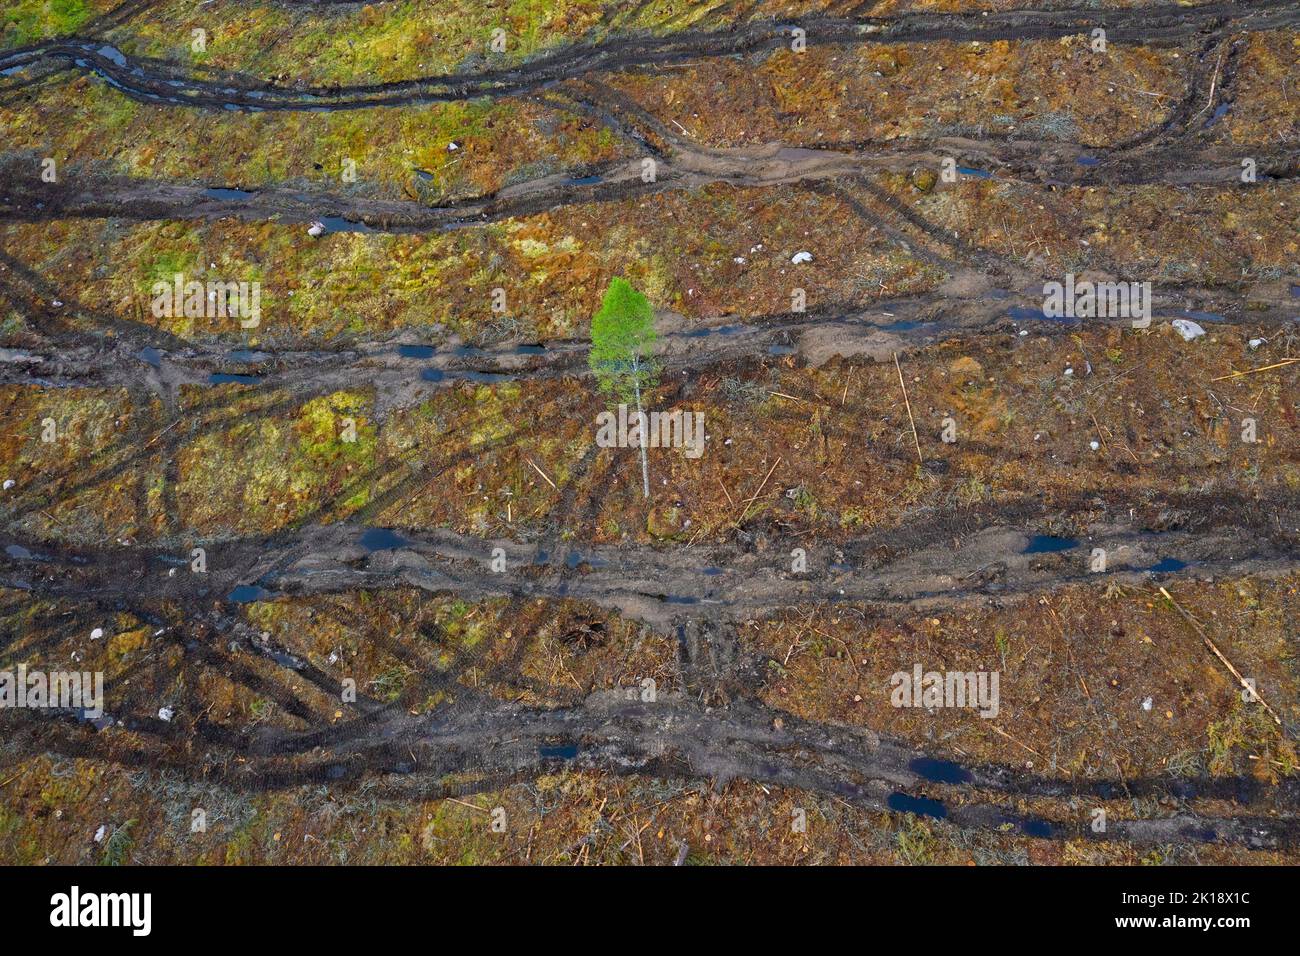 Vista aérea sobre corte claro que muestra las pistas de oruga, corte claro / tala clara es una práctica forestal / maderera en la que todos los árboles se talan Foto de stock